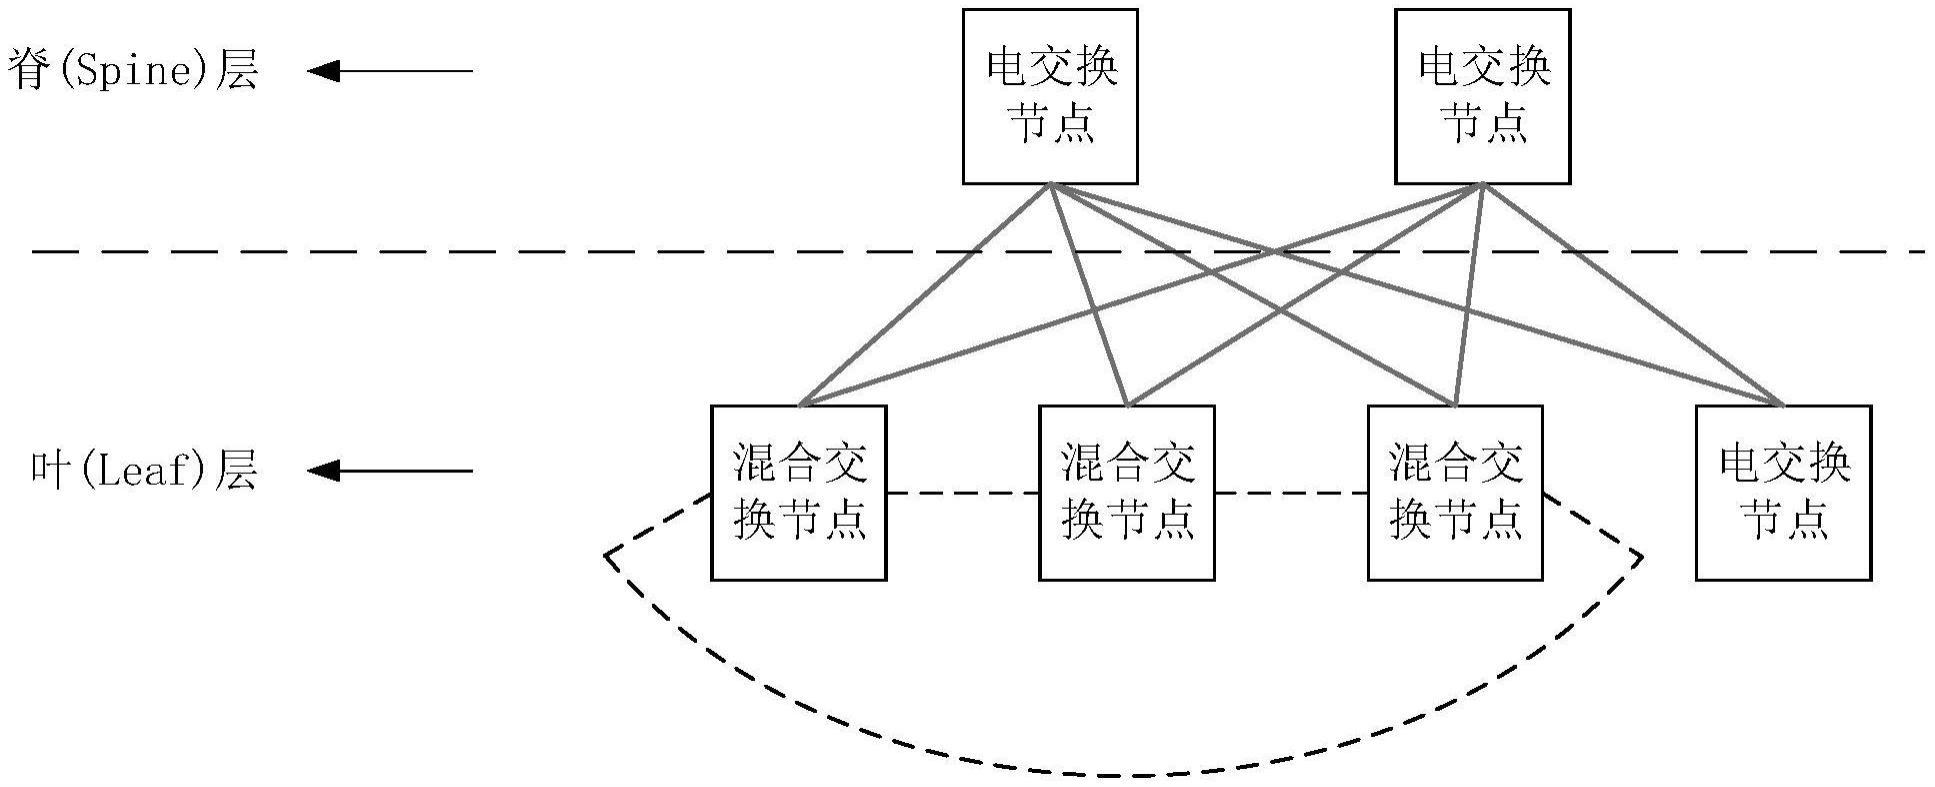 混合拓扑组成的数据中心网络结构、传输方法、介质和设备